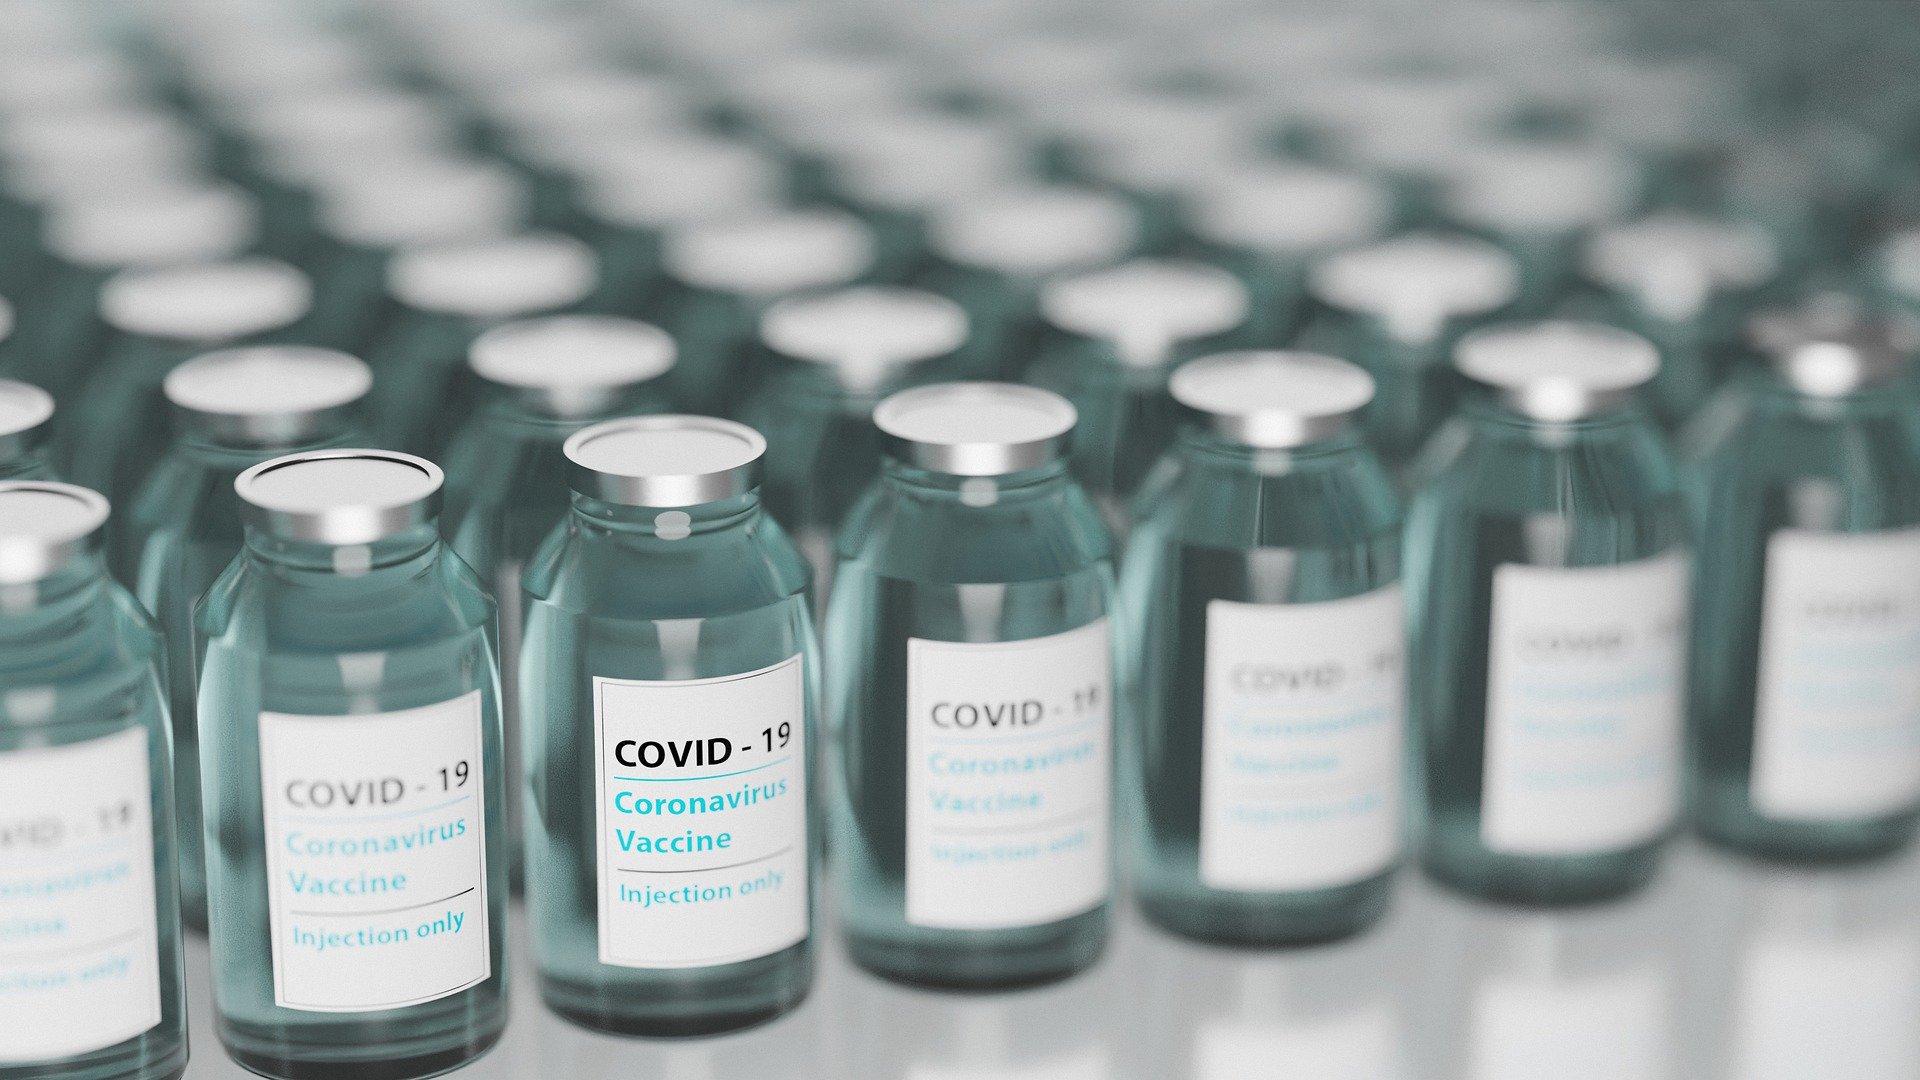 É falso áudio do Whatsapp que diz que foi encontrado o vírus HIV nas vacinas da Covid-19  (Foto: Pixabay)